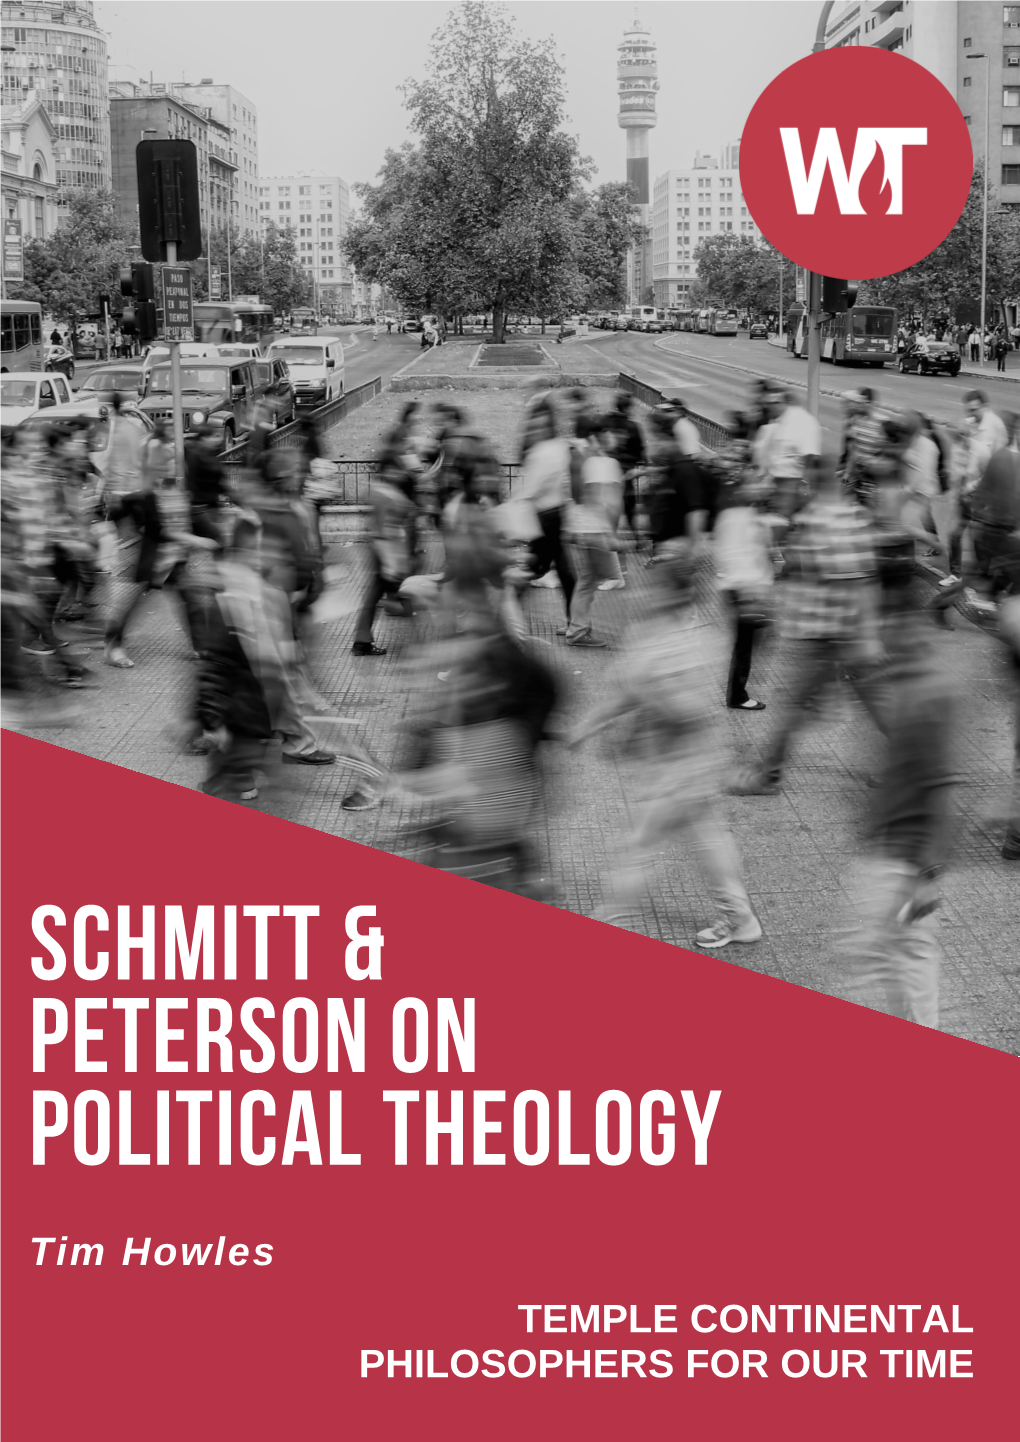 Schmitt & Peterson on Political Theology